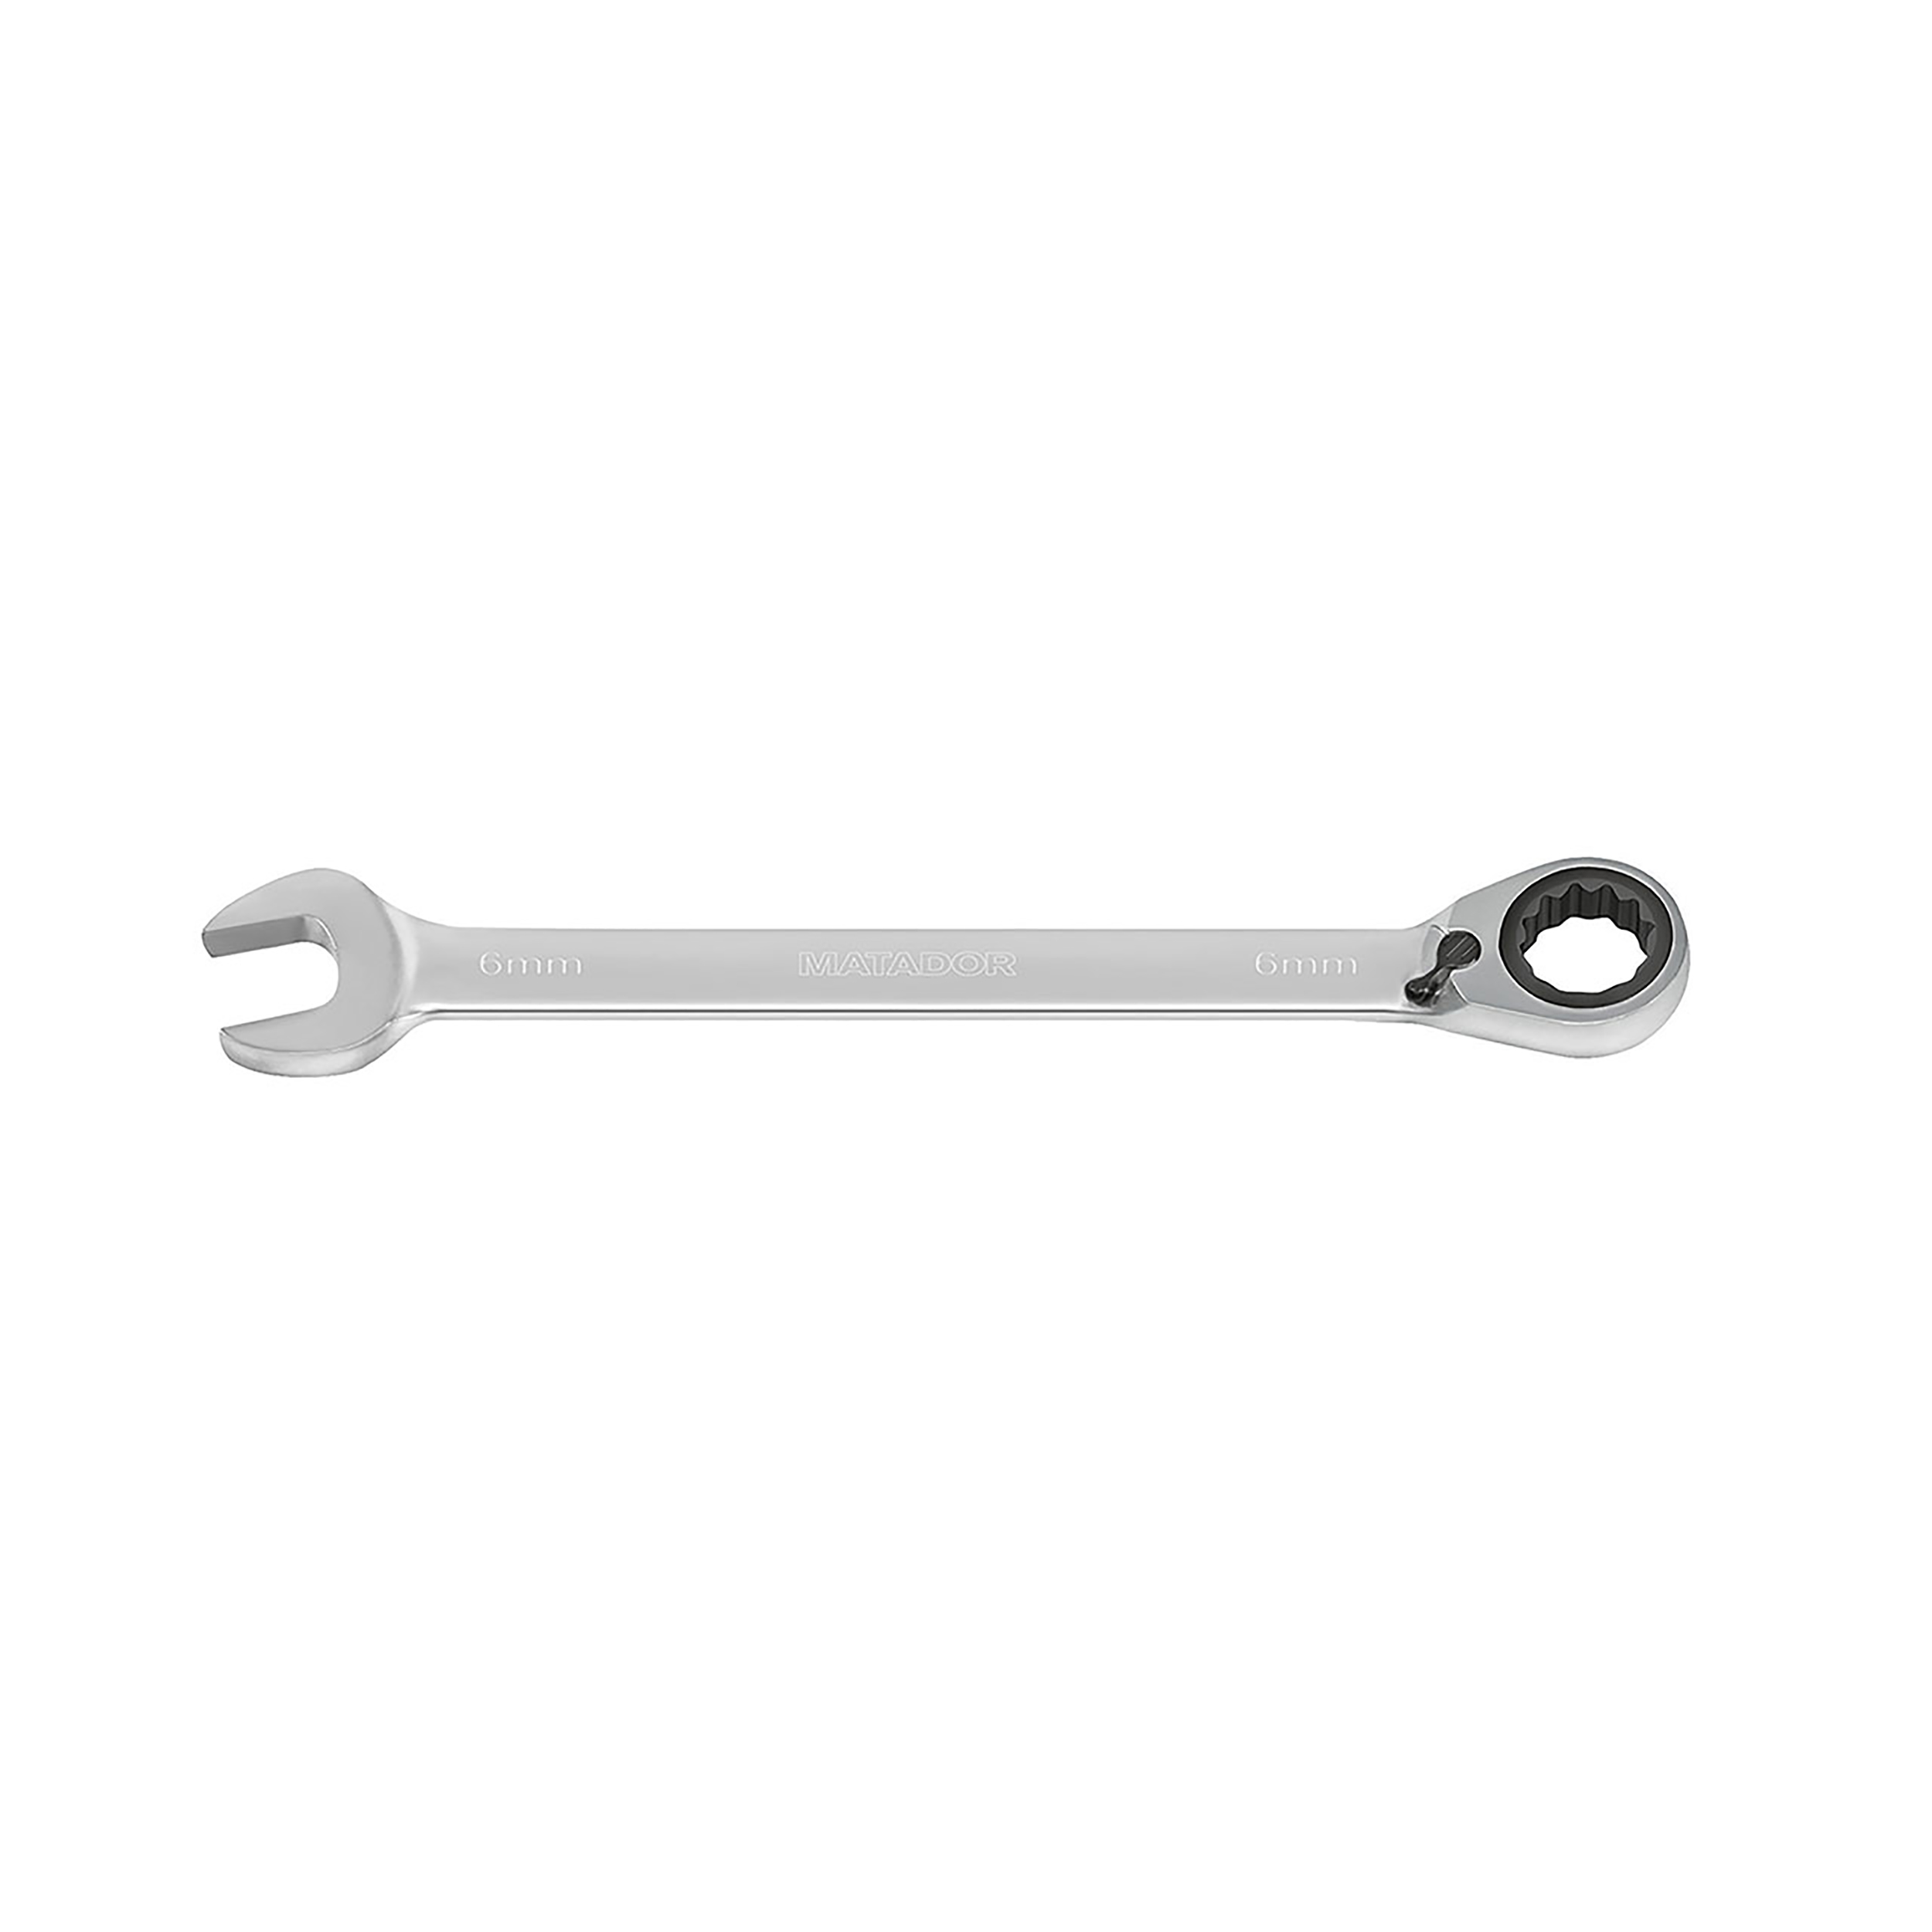 Knarren-Ringmaulschlüssel, m. Hebel, 15 mm, 240 Nm, MATADOR Art.-Code: 01890150